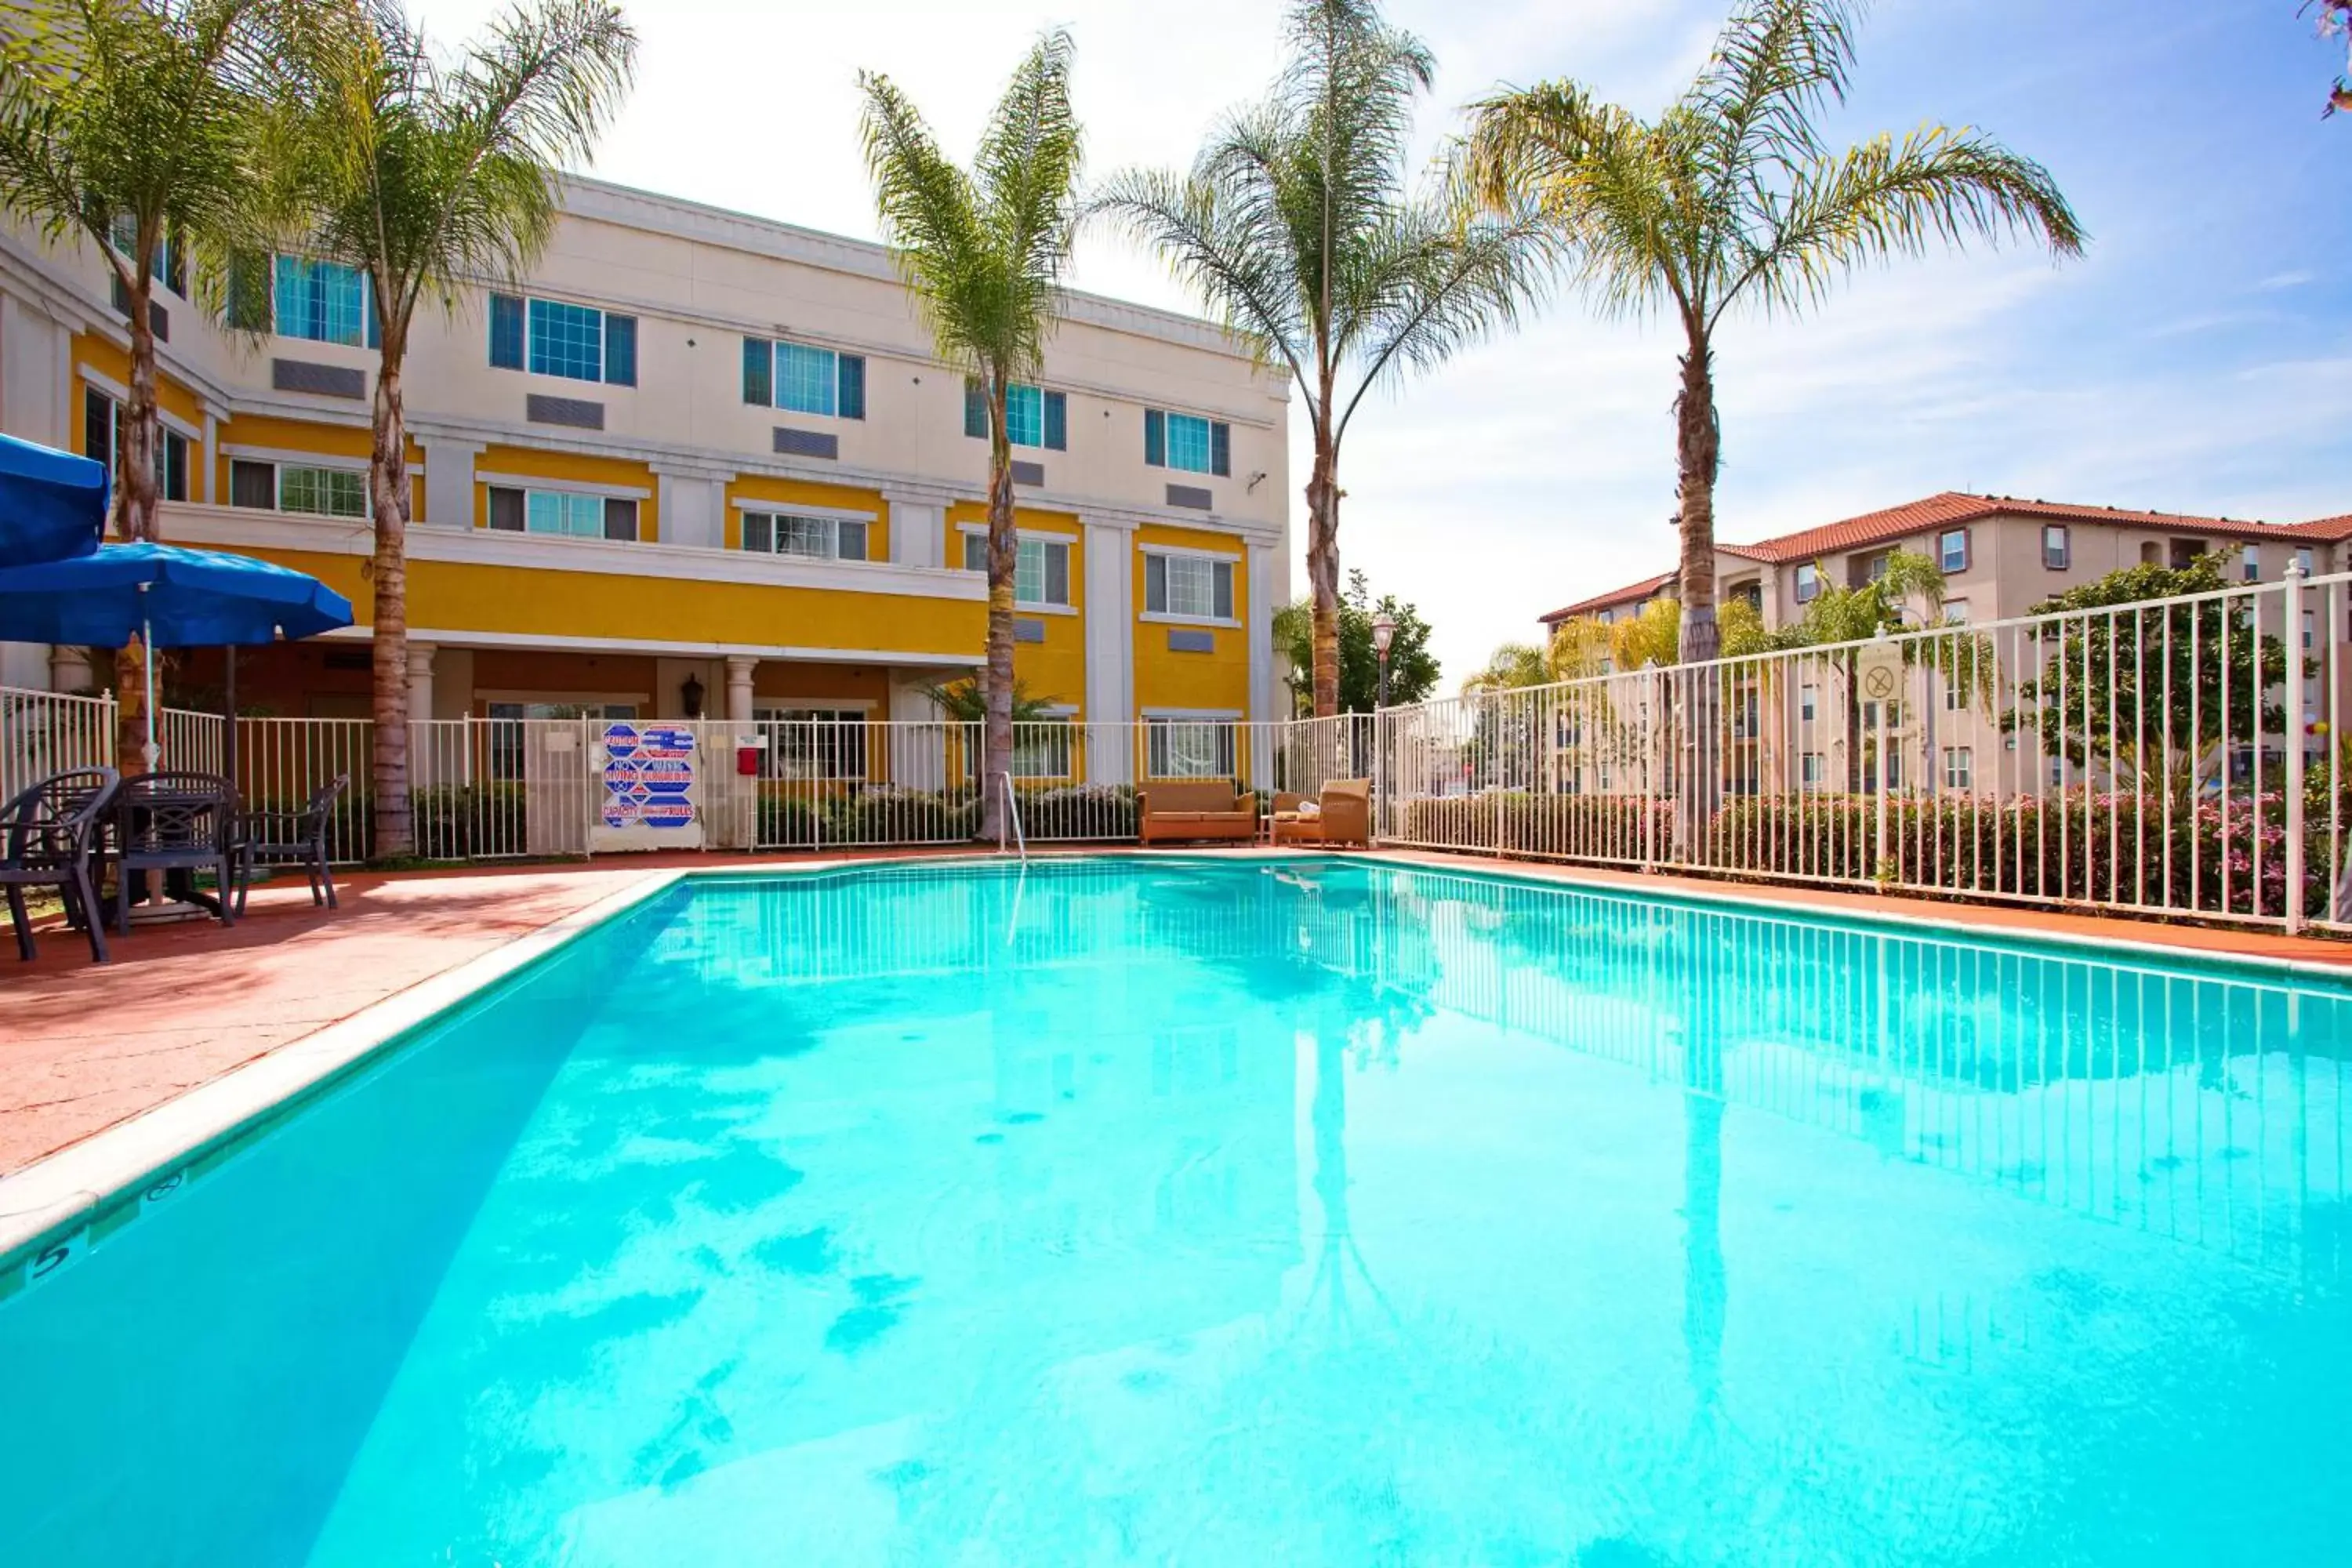 Swimming Pool in Hotel Marguerite Anaheim - Garden Grove, Trademark Collection